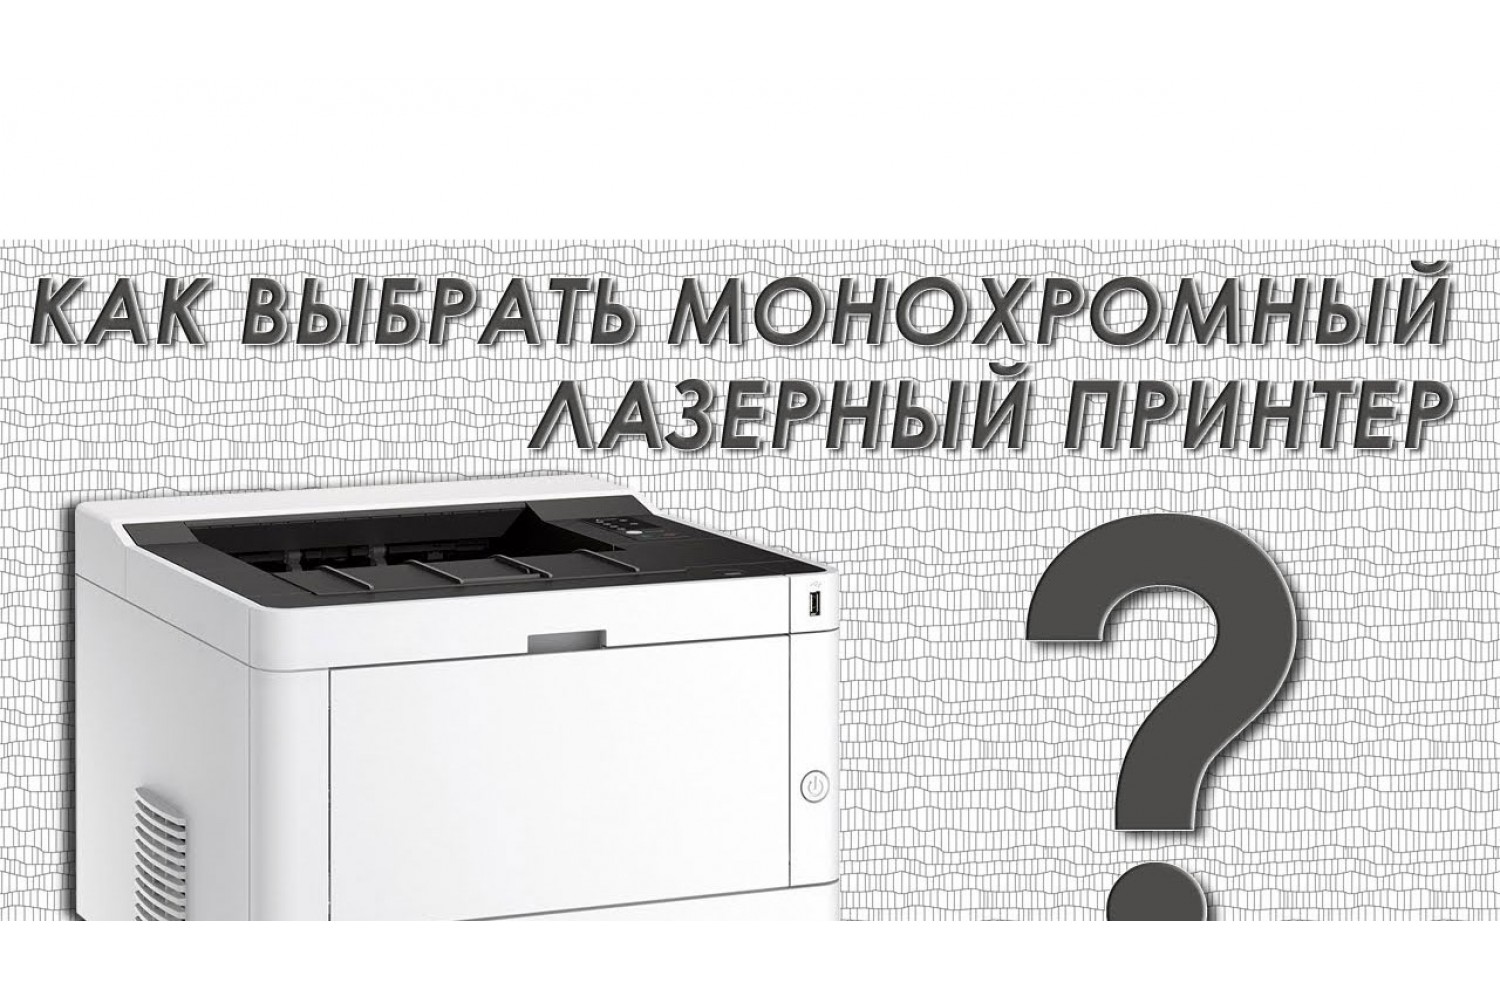 Как выбрать монохромный лазерный принтер?